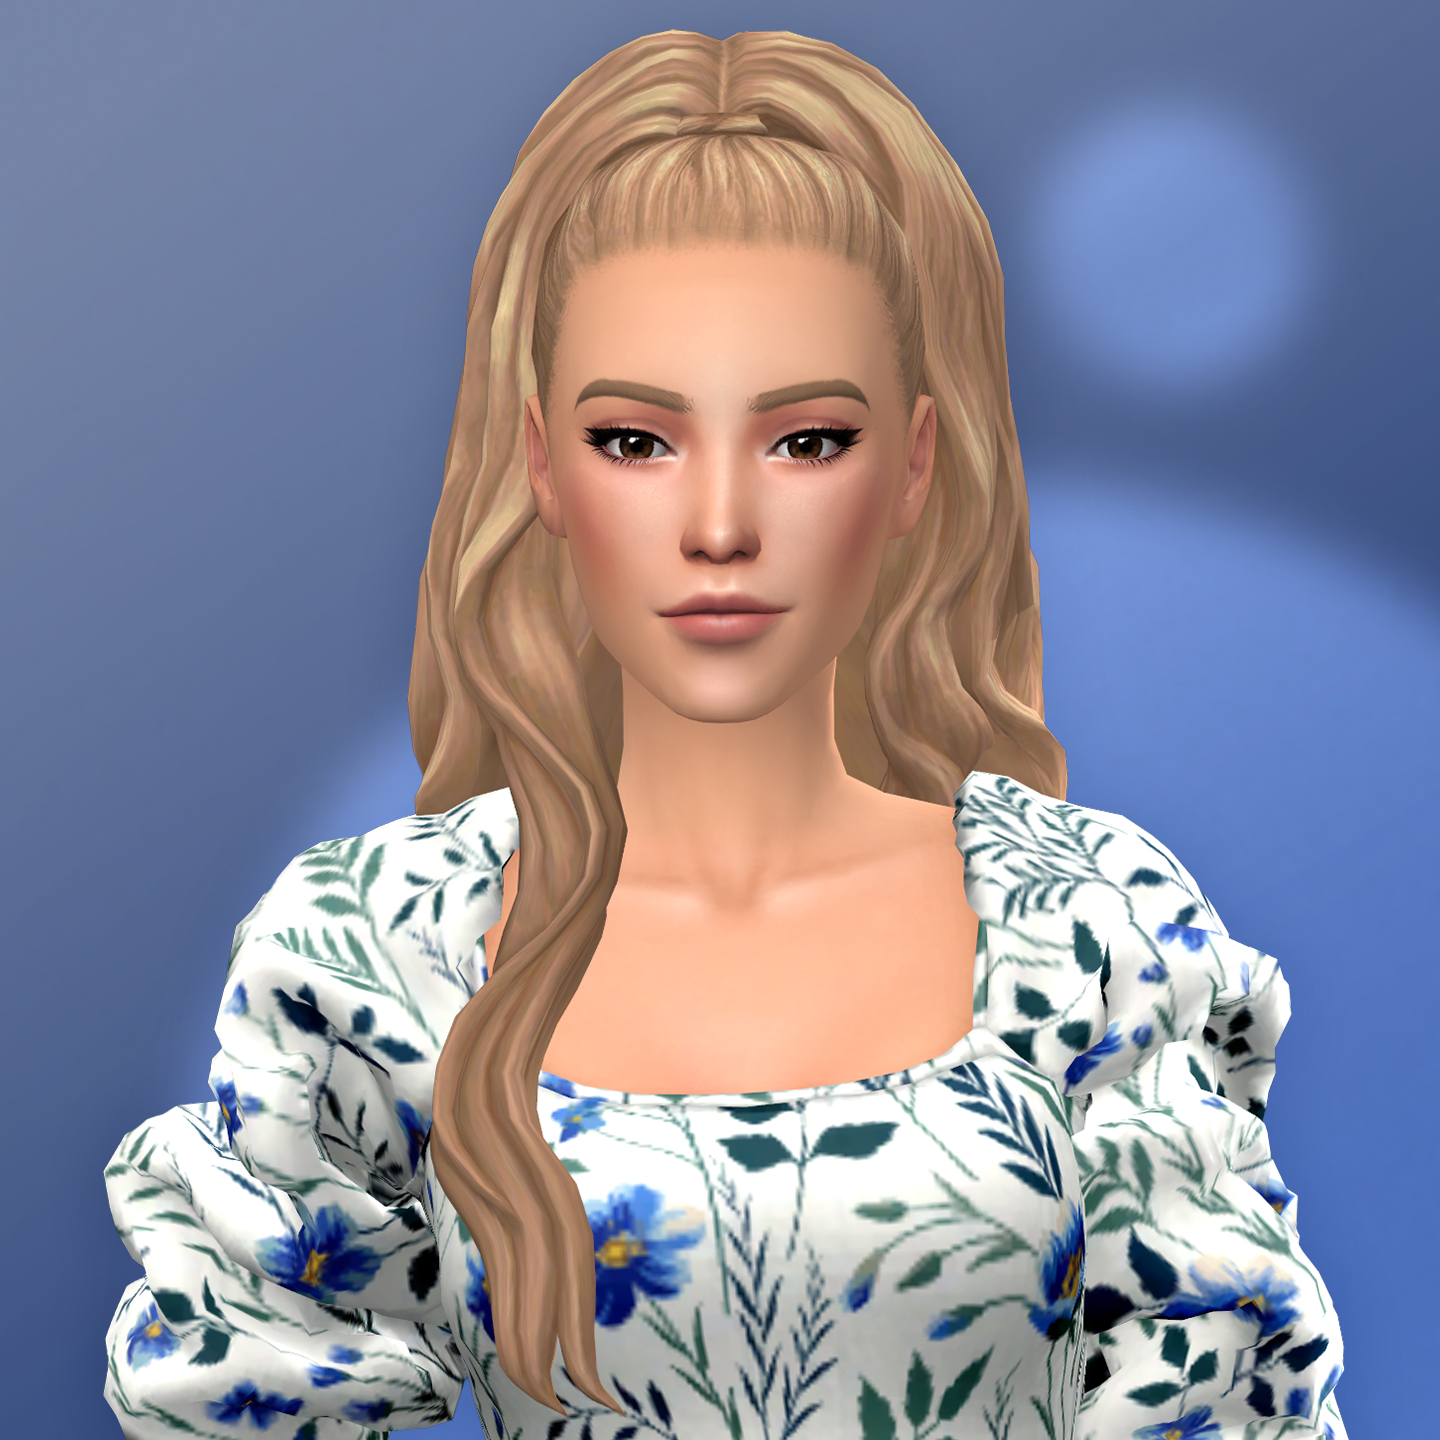 QICC - Tia Hair - The Sims 4 Create a Sim - CurseForge